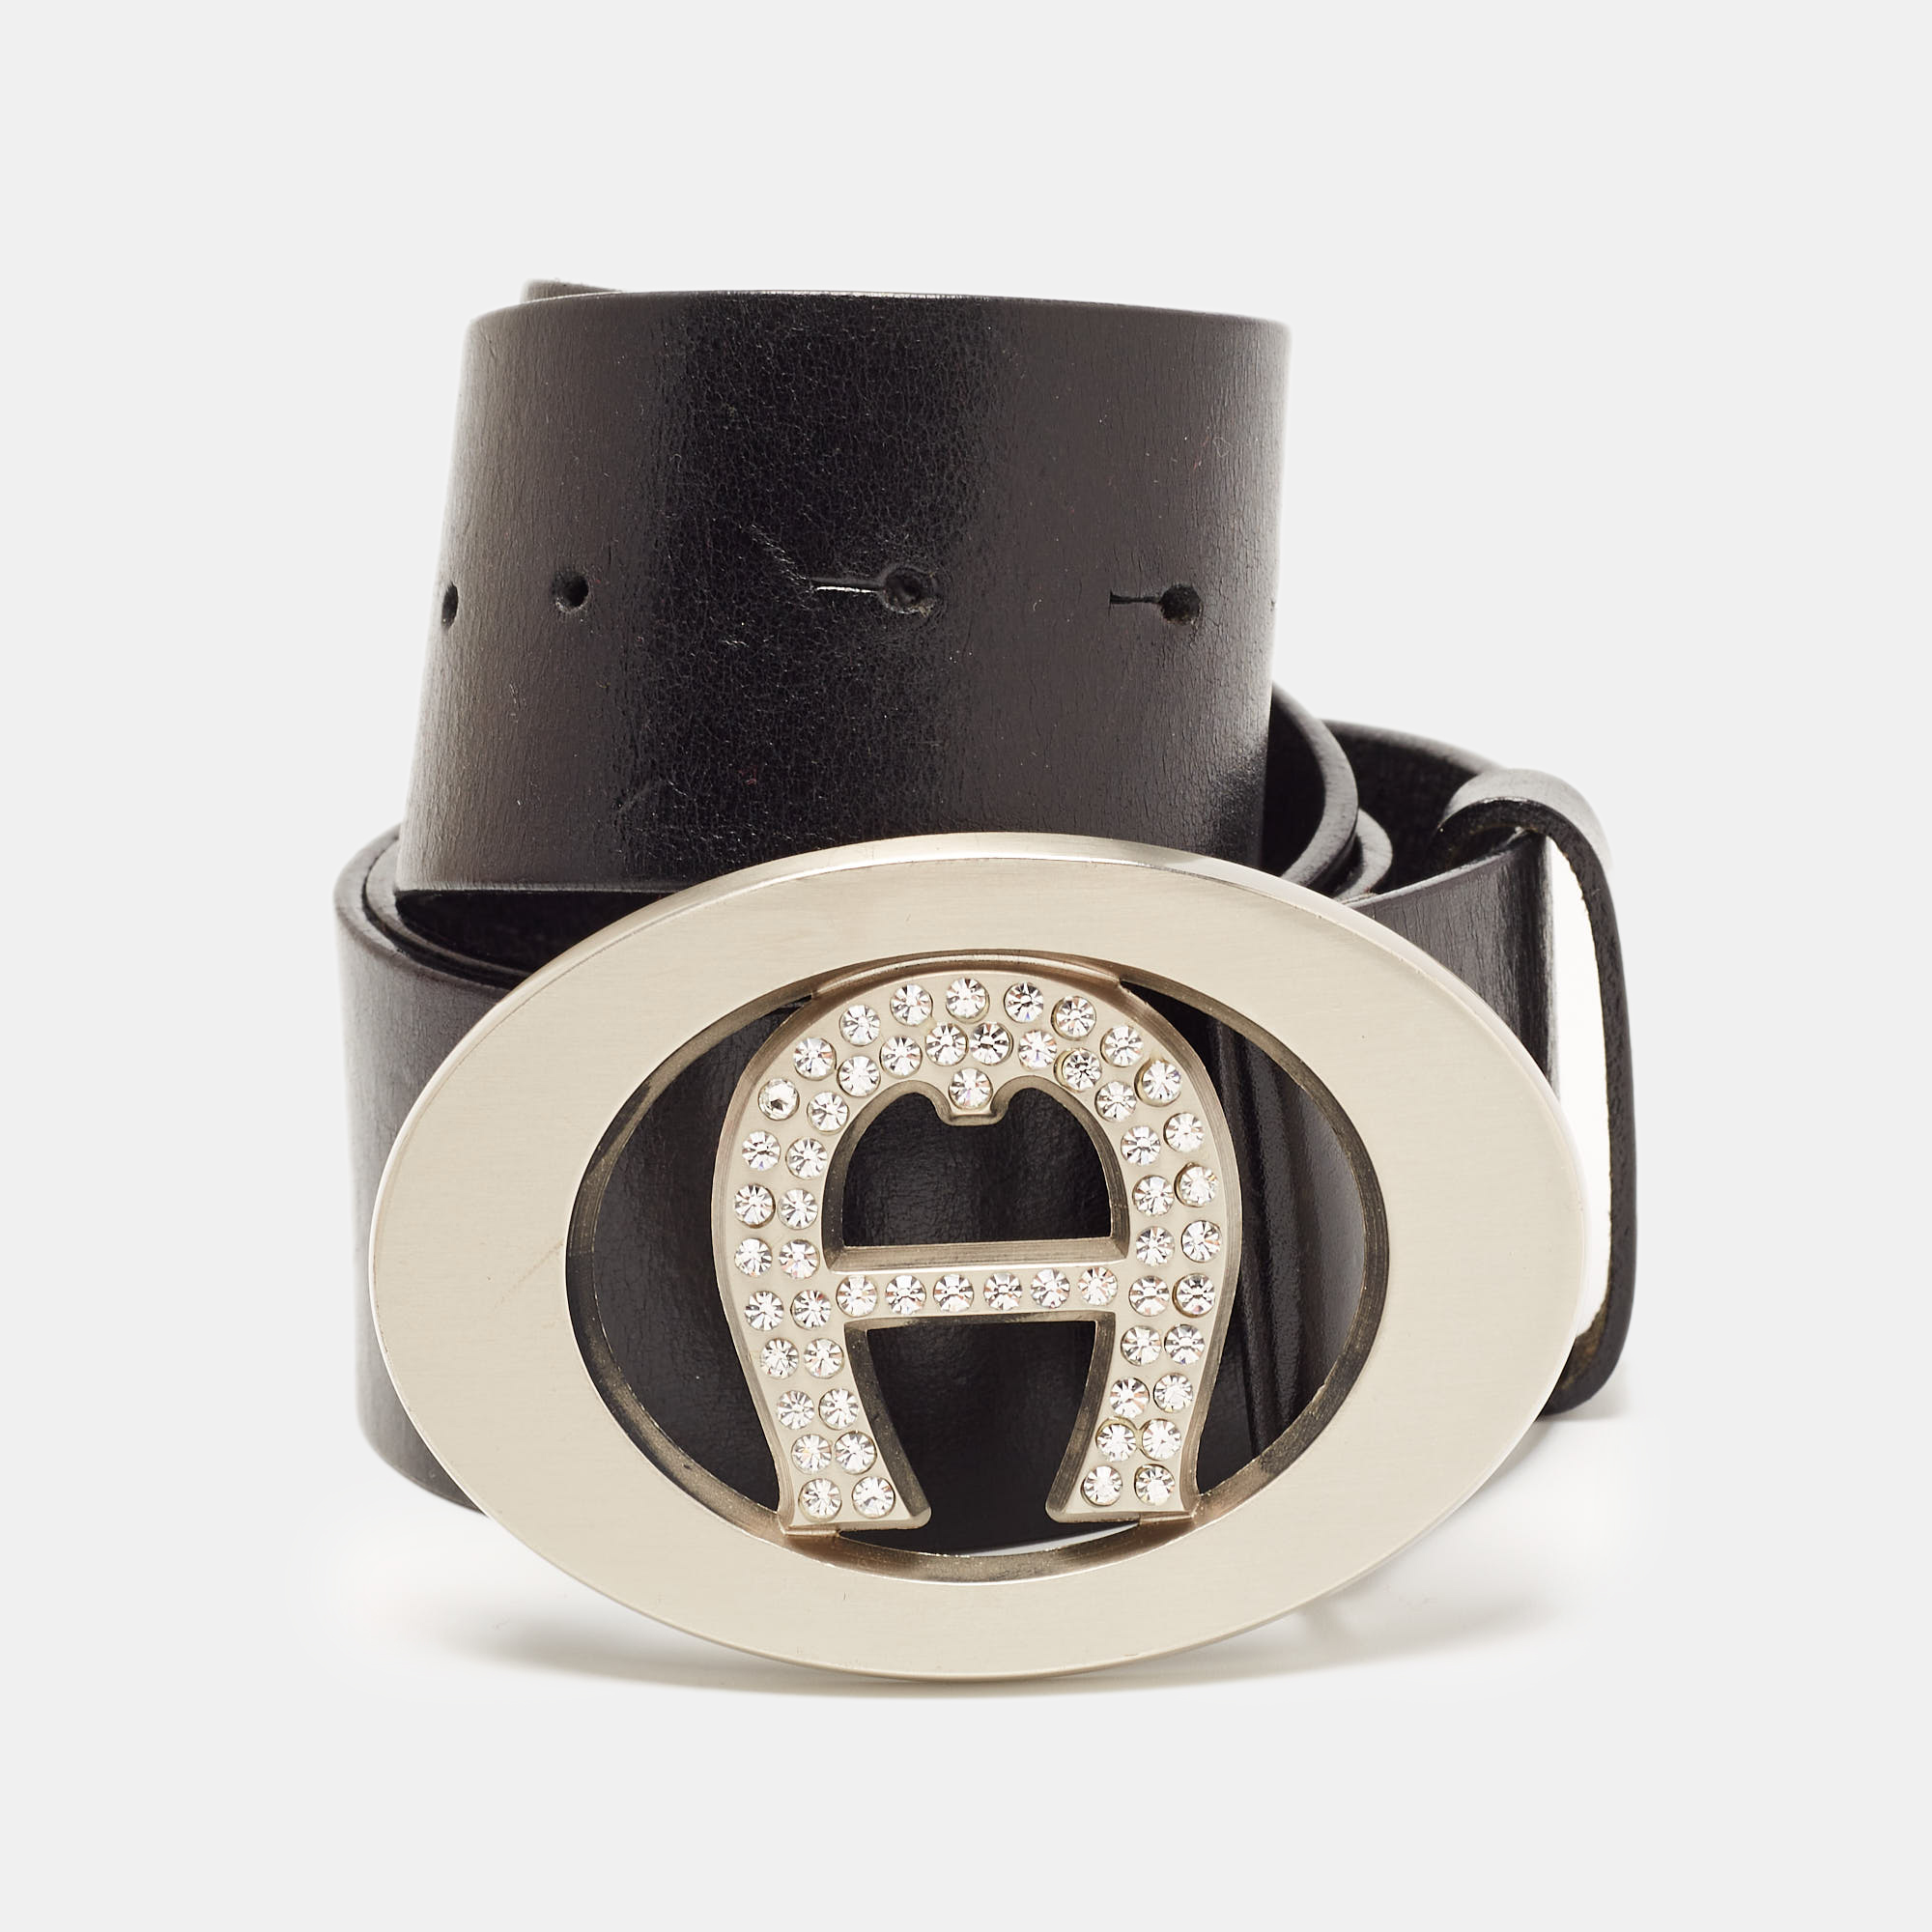 Pre-owned Aigner Black Leather Crystal Embellished Logo Belt 90cm